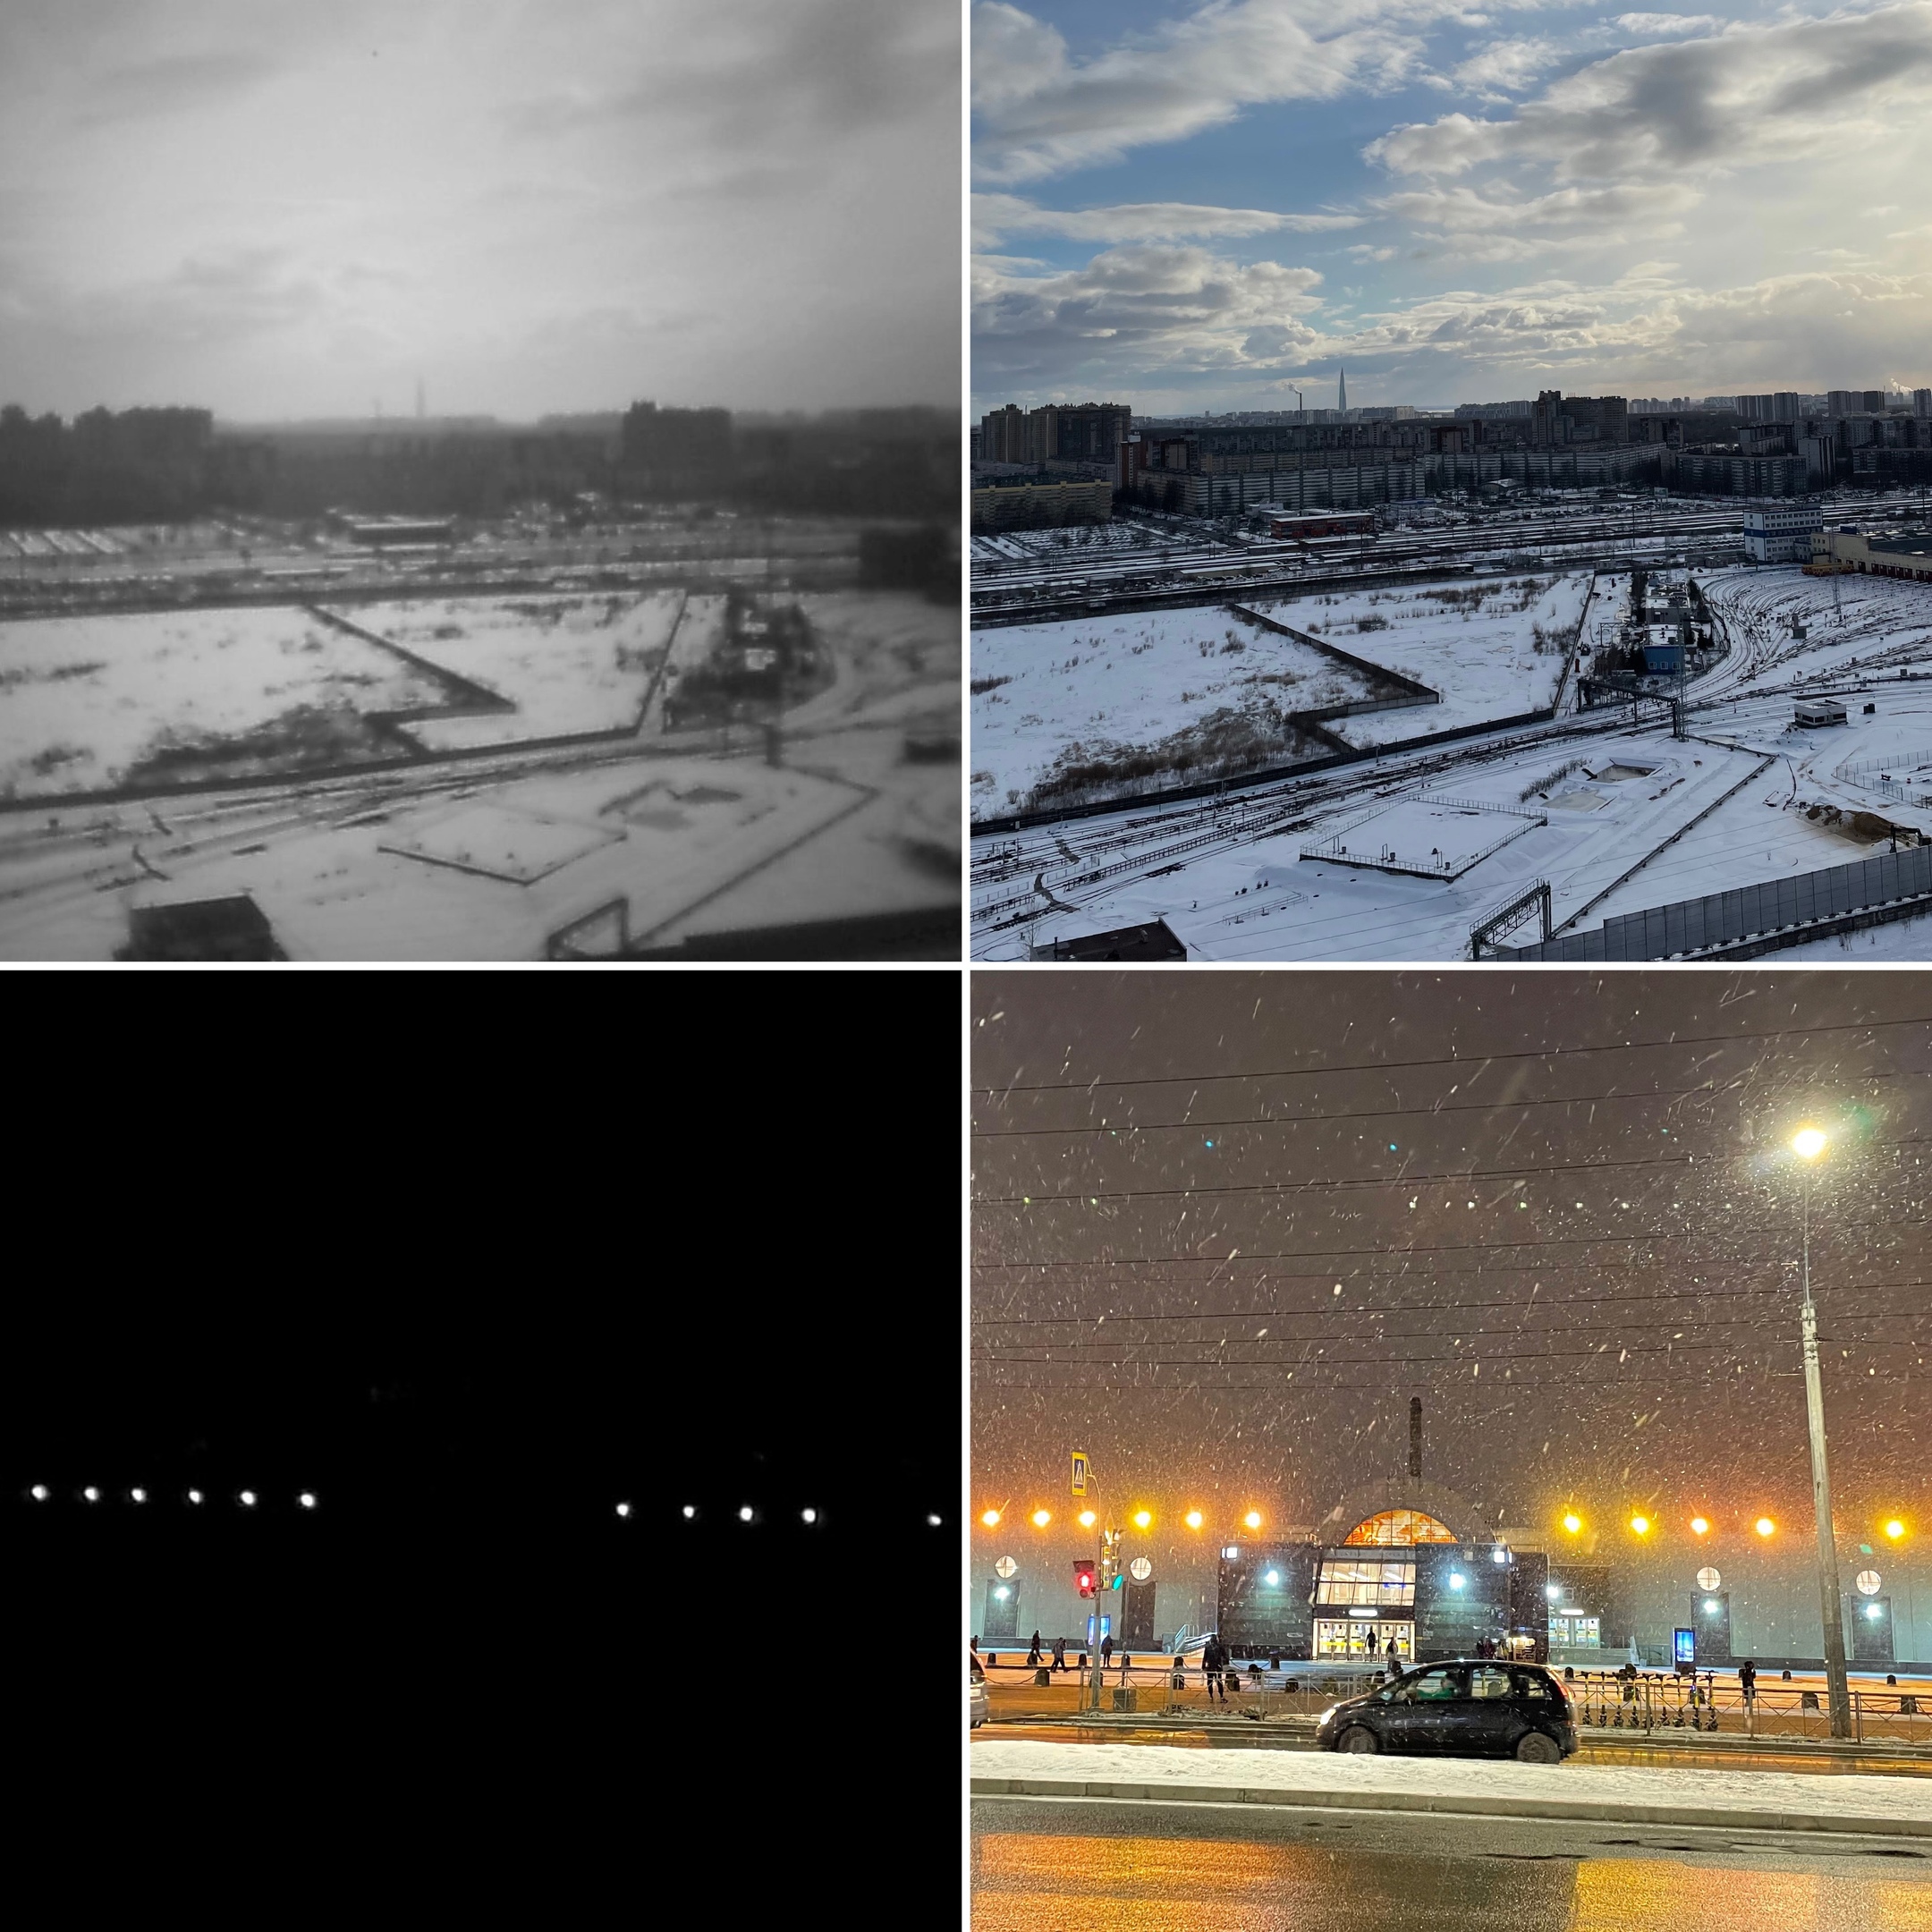 Слева - снимки на ультрафиолетовую камеру, справа - снимки на обычную камеру, сверху - дневной пейзаж, снизу - ночной